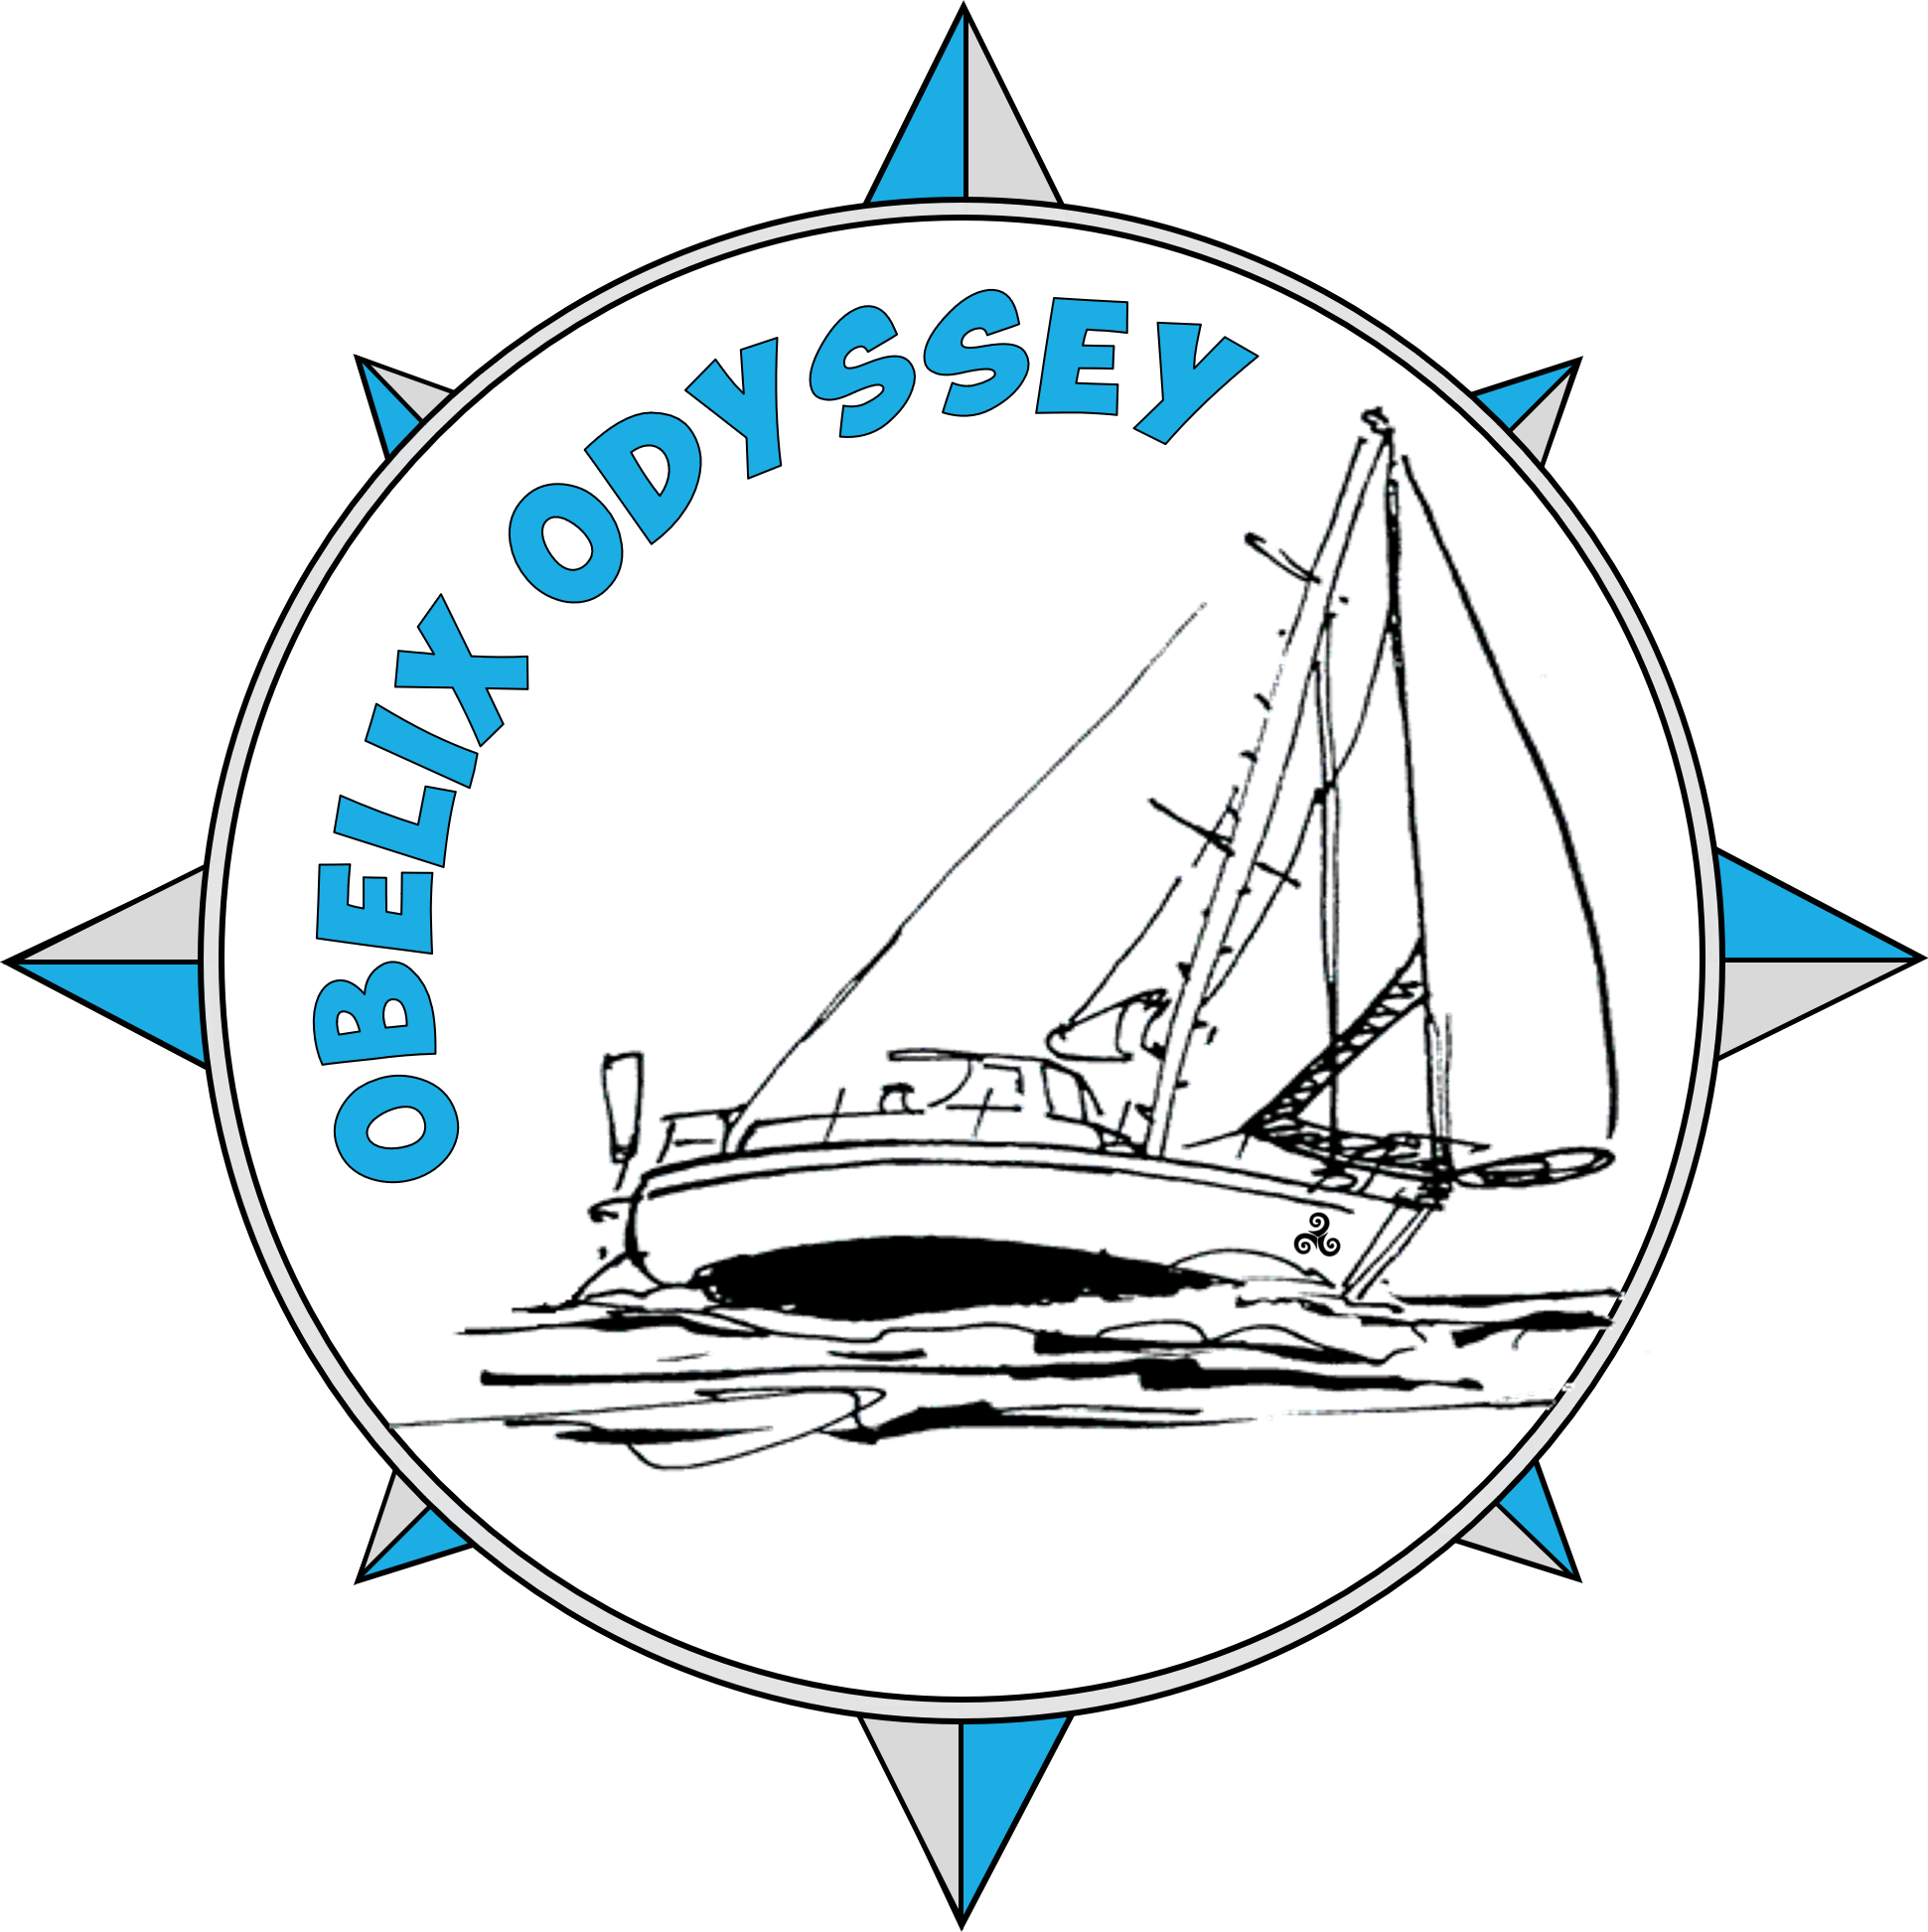 Obelix Odyssey